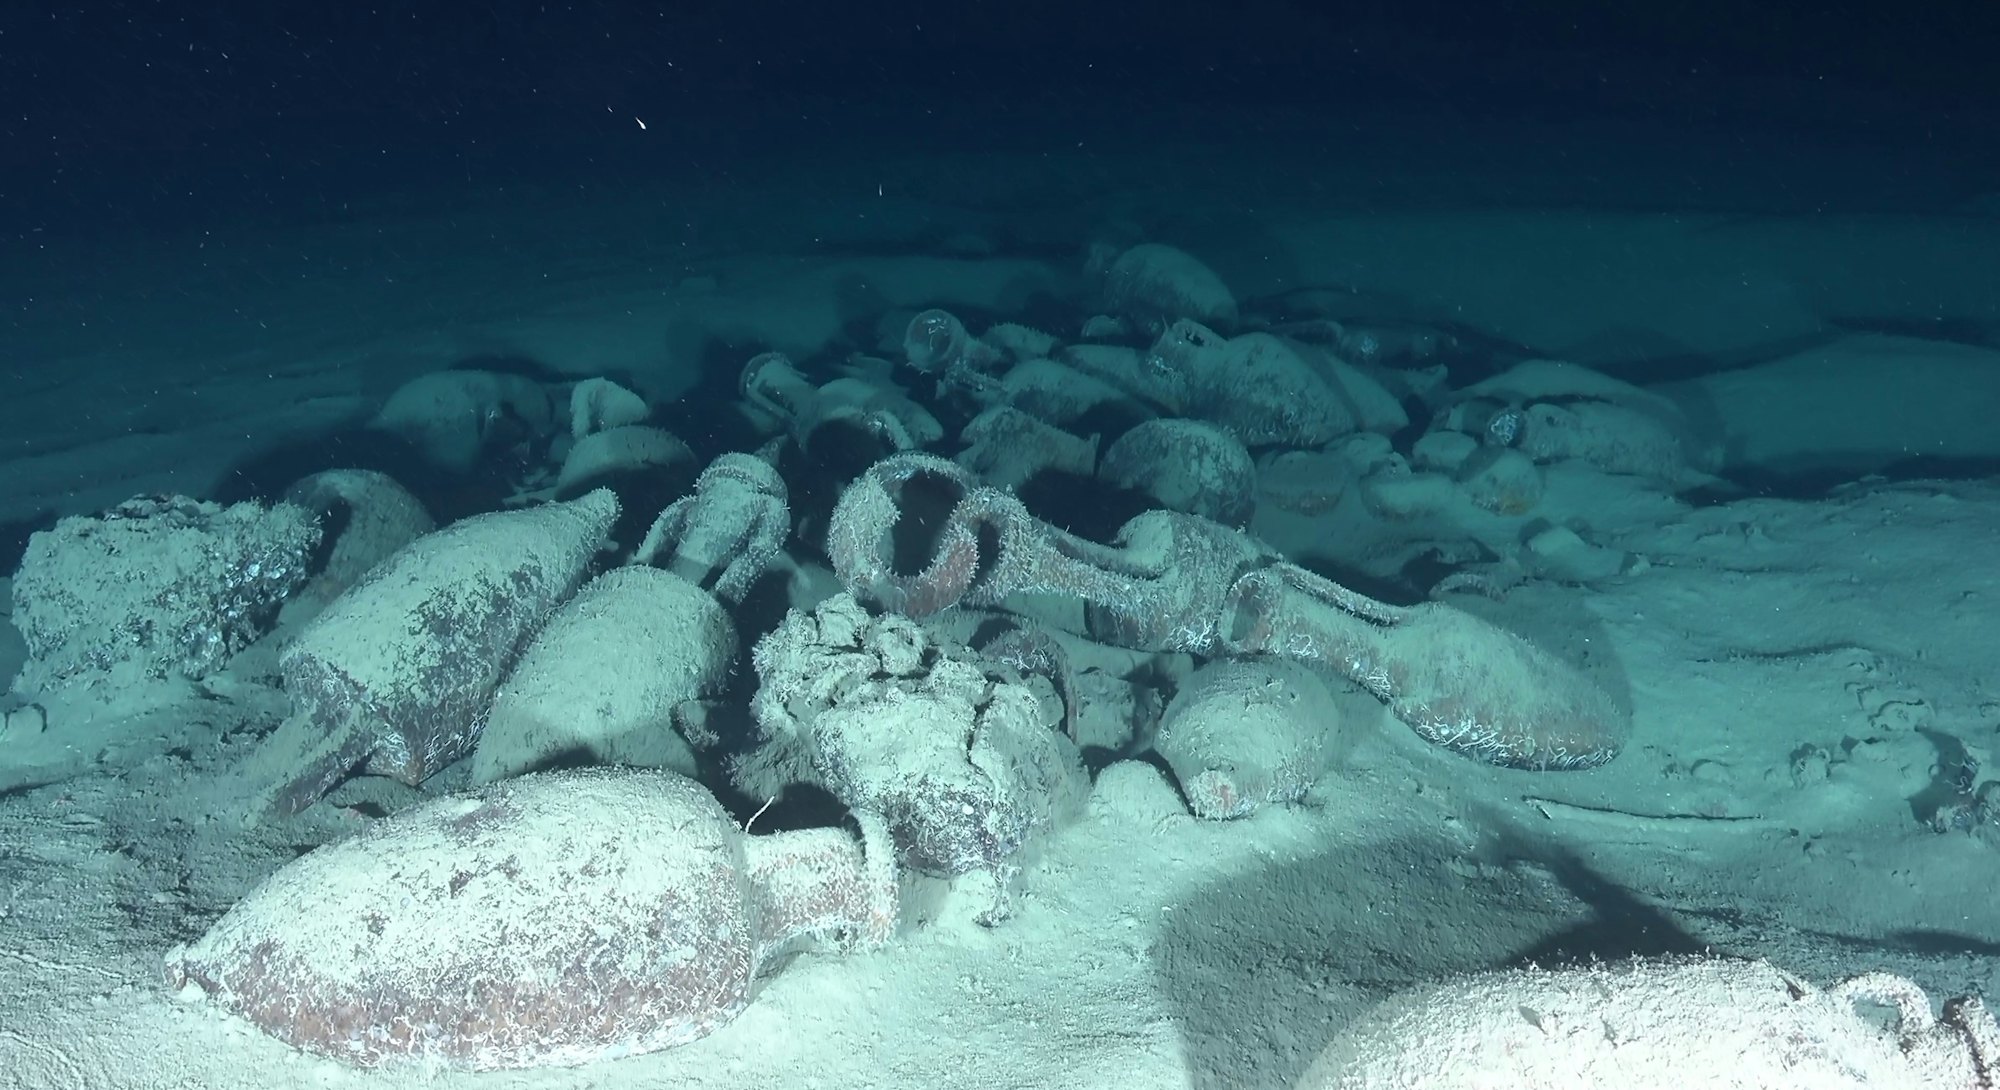 Ancient artefacts litter the seafloor